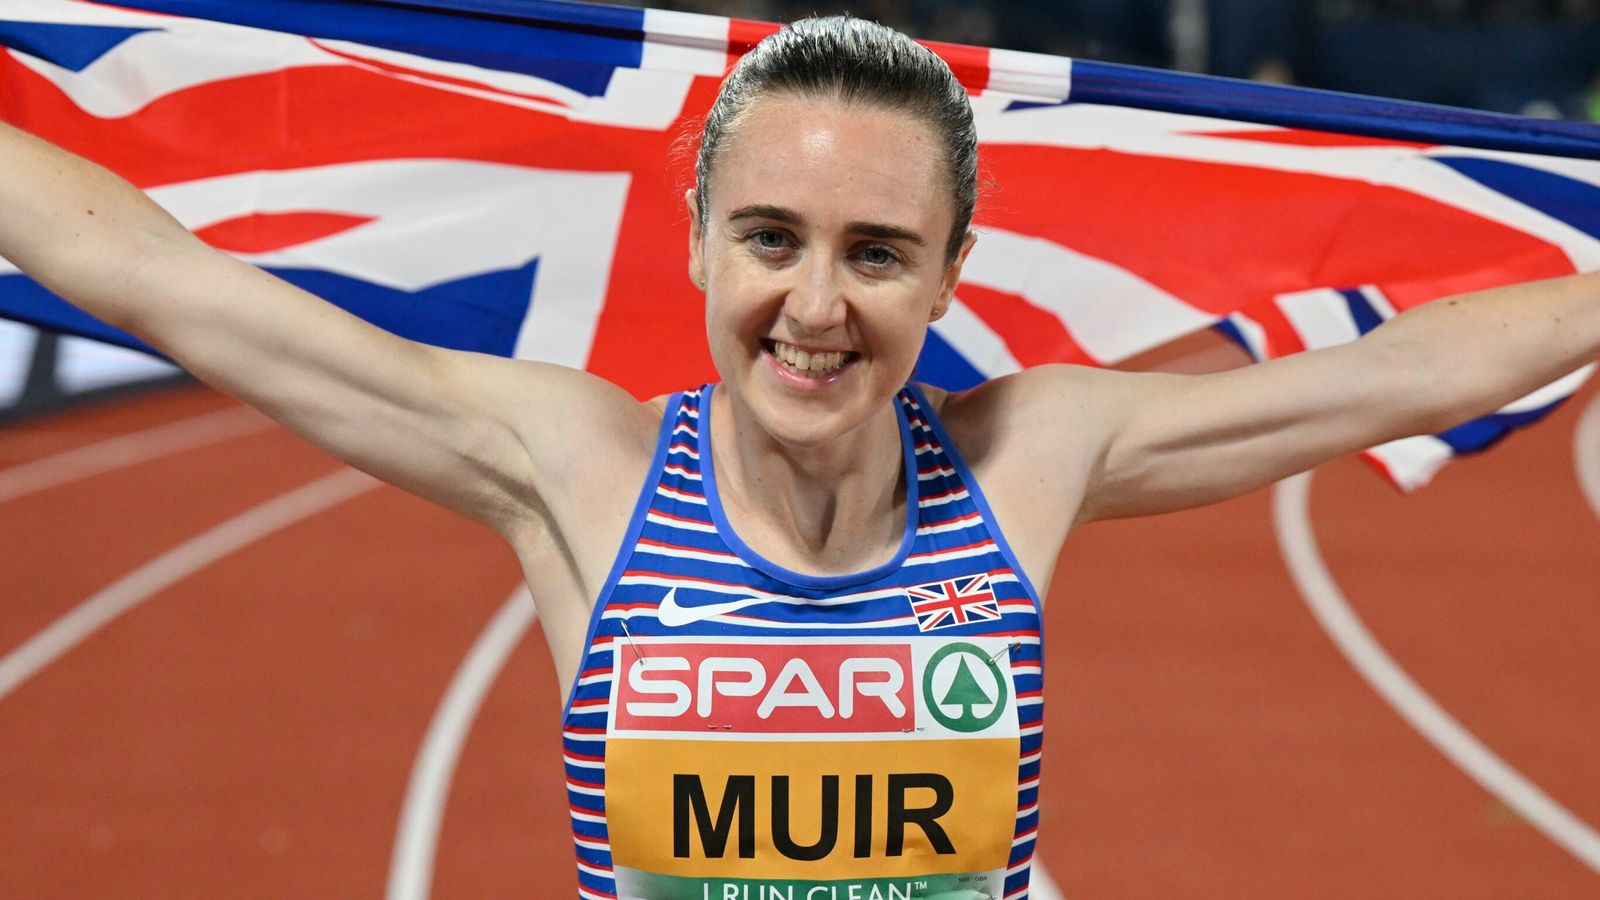 Mistrzostwa Europy: Laura Muir zdobywa europejskie złoto na 1500 m, aby ukoronować szalone lato |  Wiadomości lekkoatletyczne